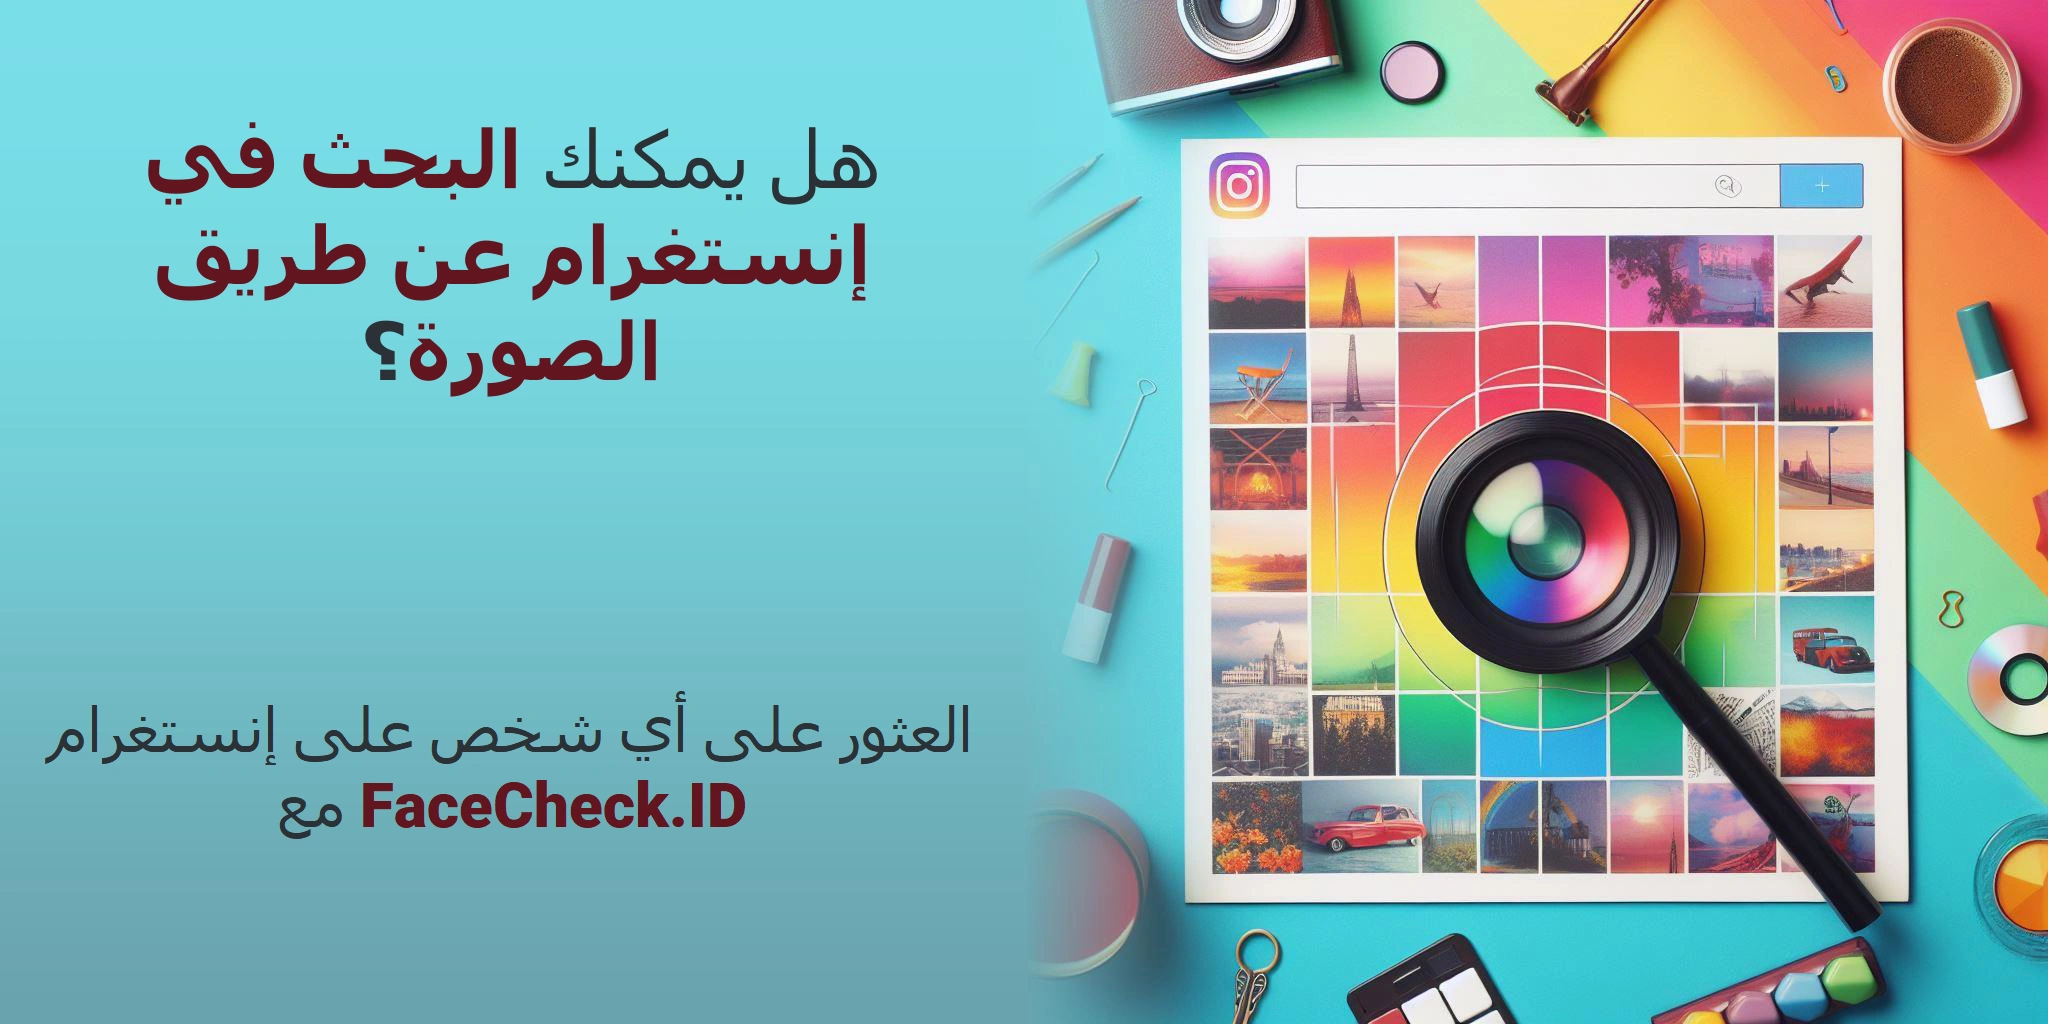 هل يمكنك البحث في إنستغرام عن طريق الصورة؟ العثور على أي شخص على إنستغرام مع FaceCheck.ID